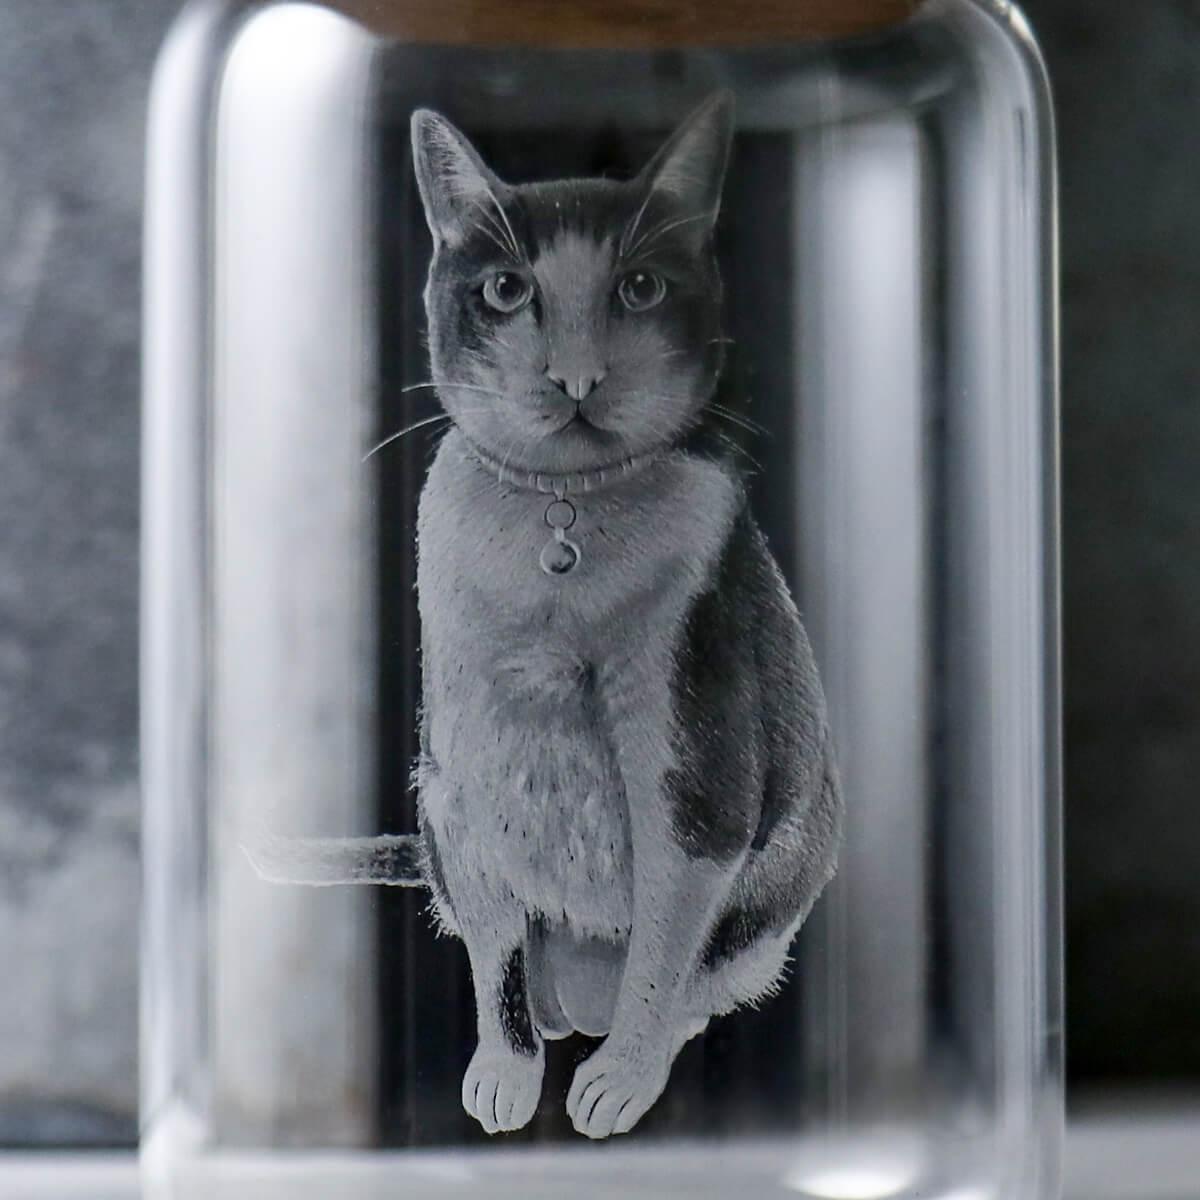 15cm【貓咪寵物骨灰罐】貓全身坐姿 客製適合毛小孩在天堂明亮純淨的家 - MSA玻璃雕刻